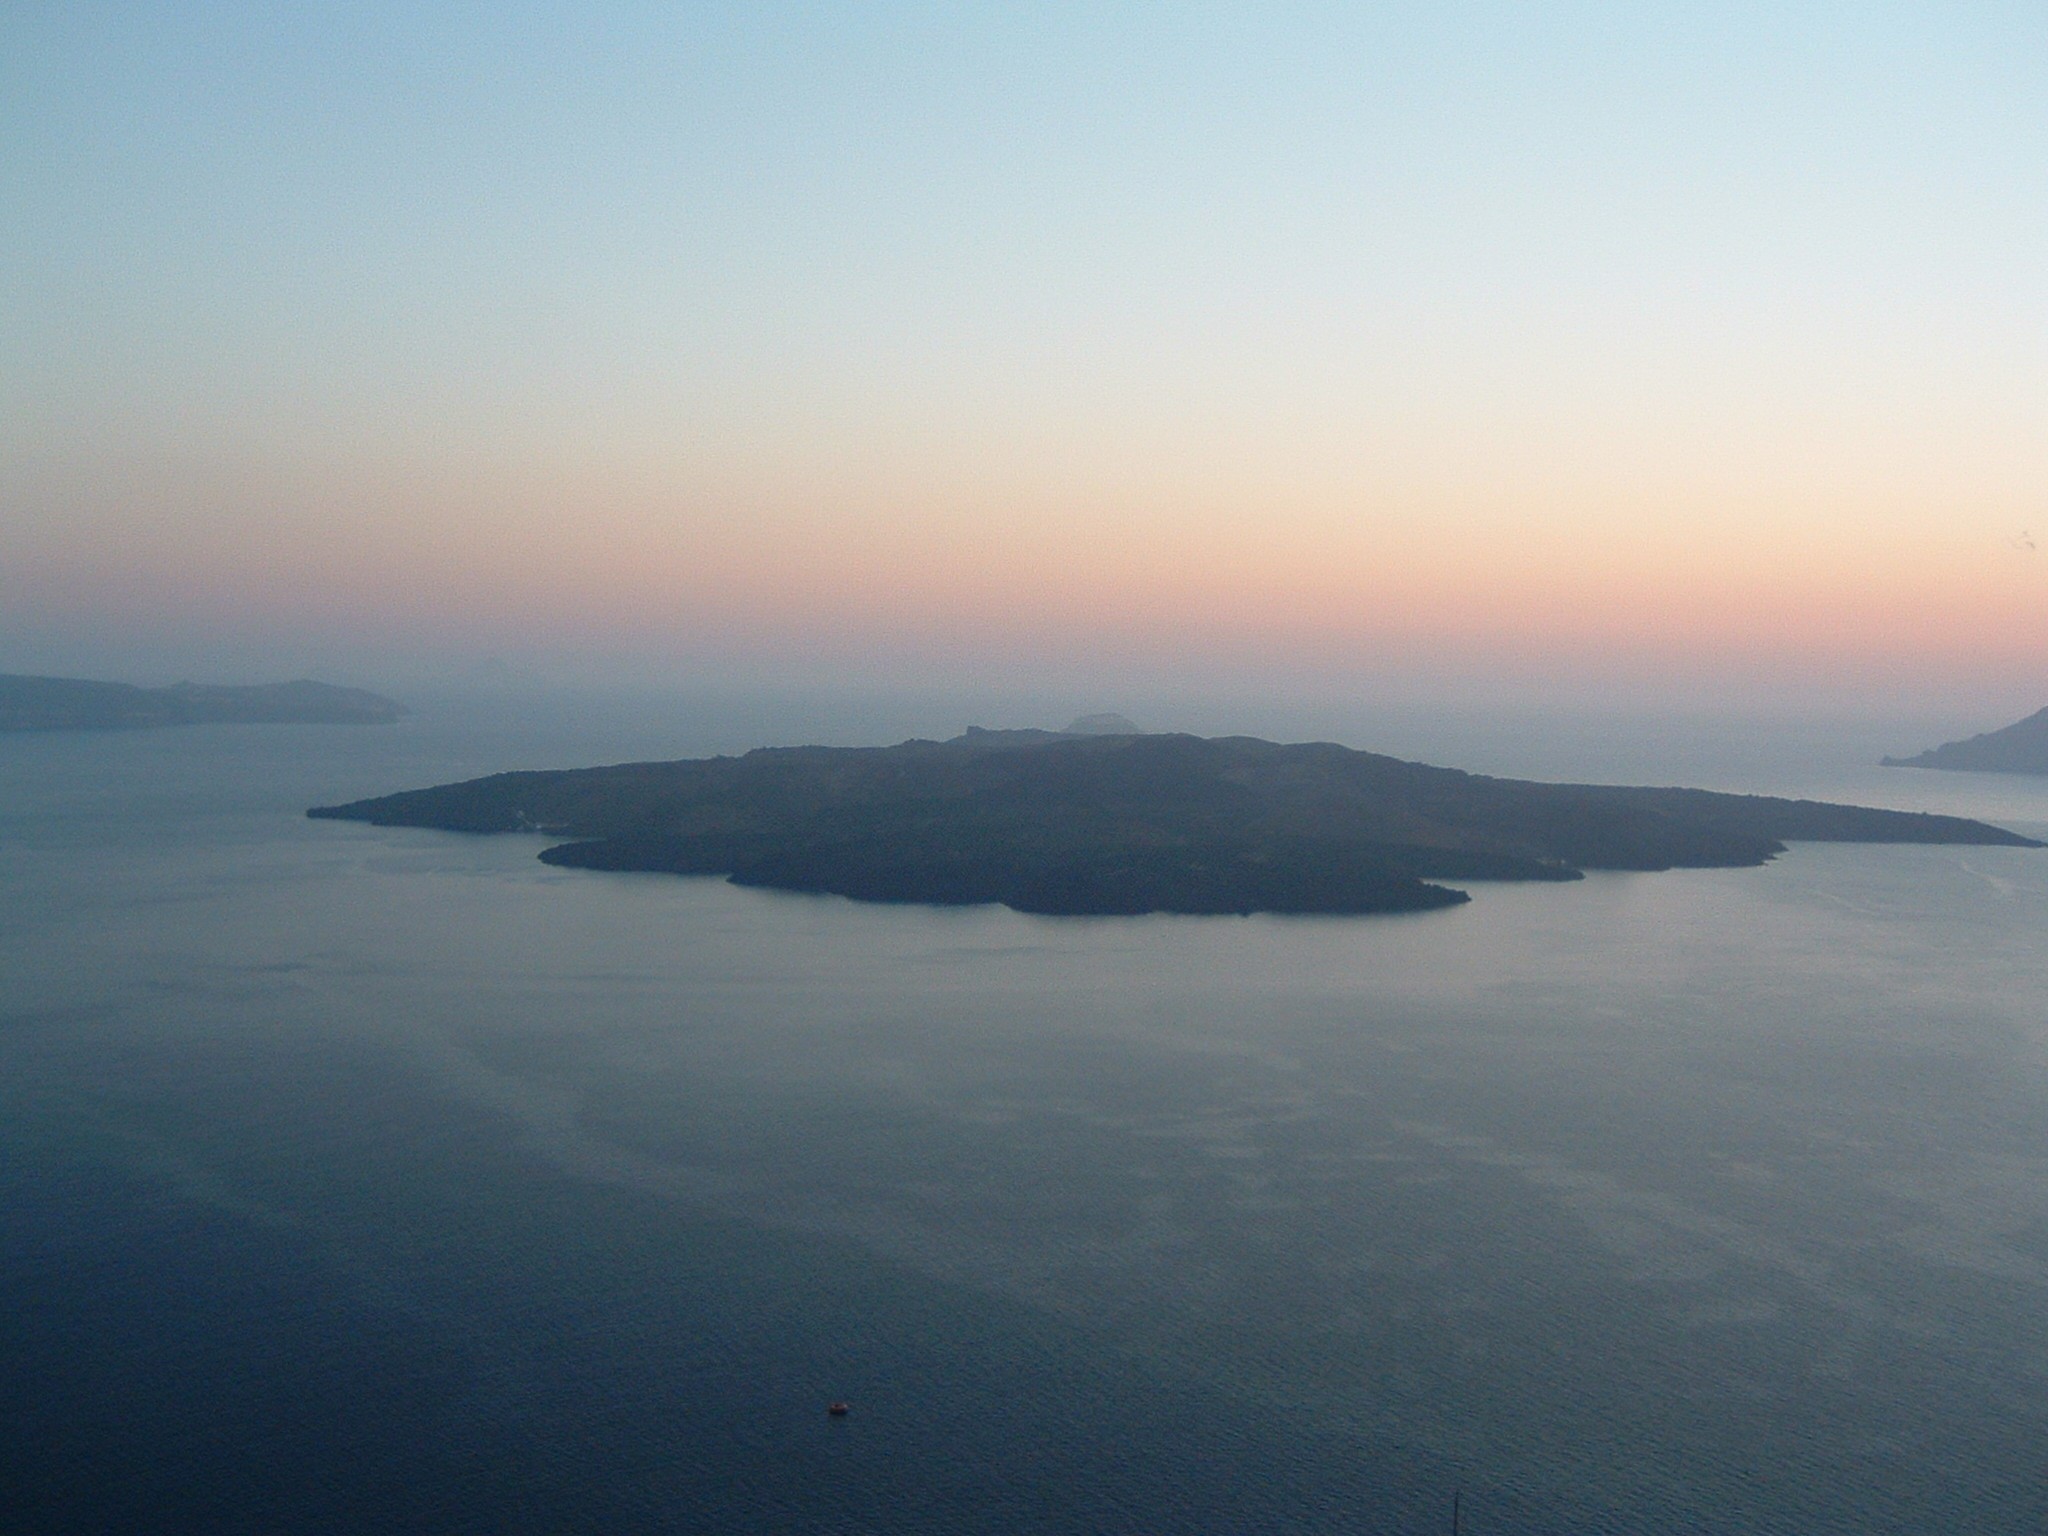 un bout de l'ile volcanique grecque de santorini